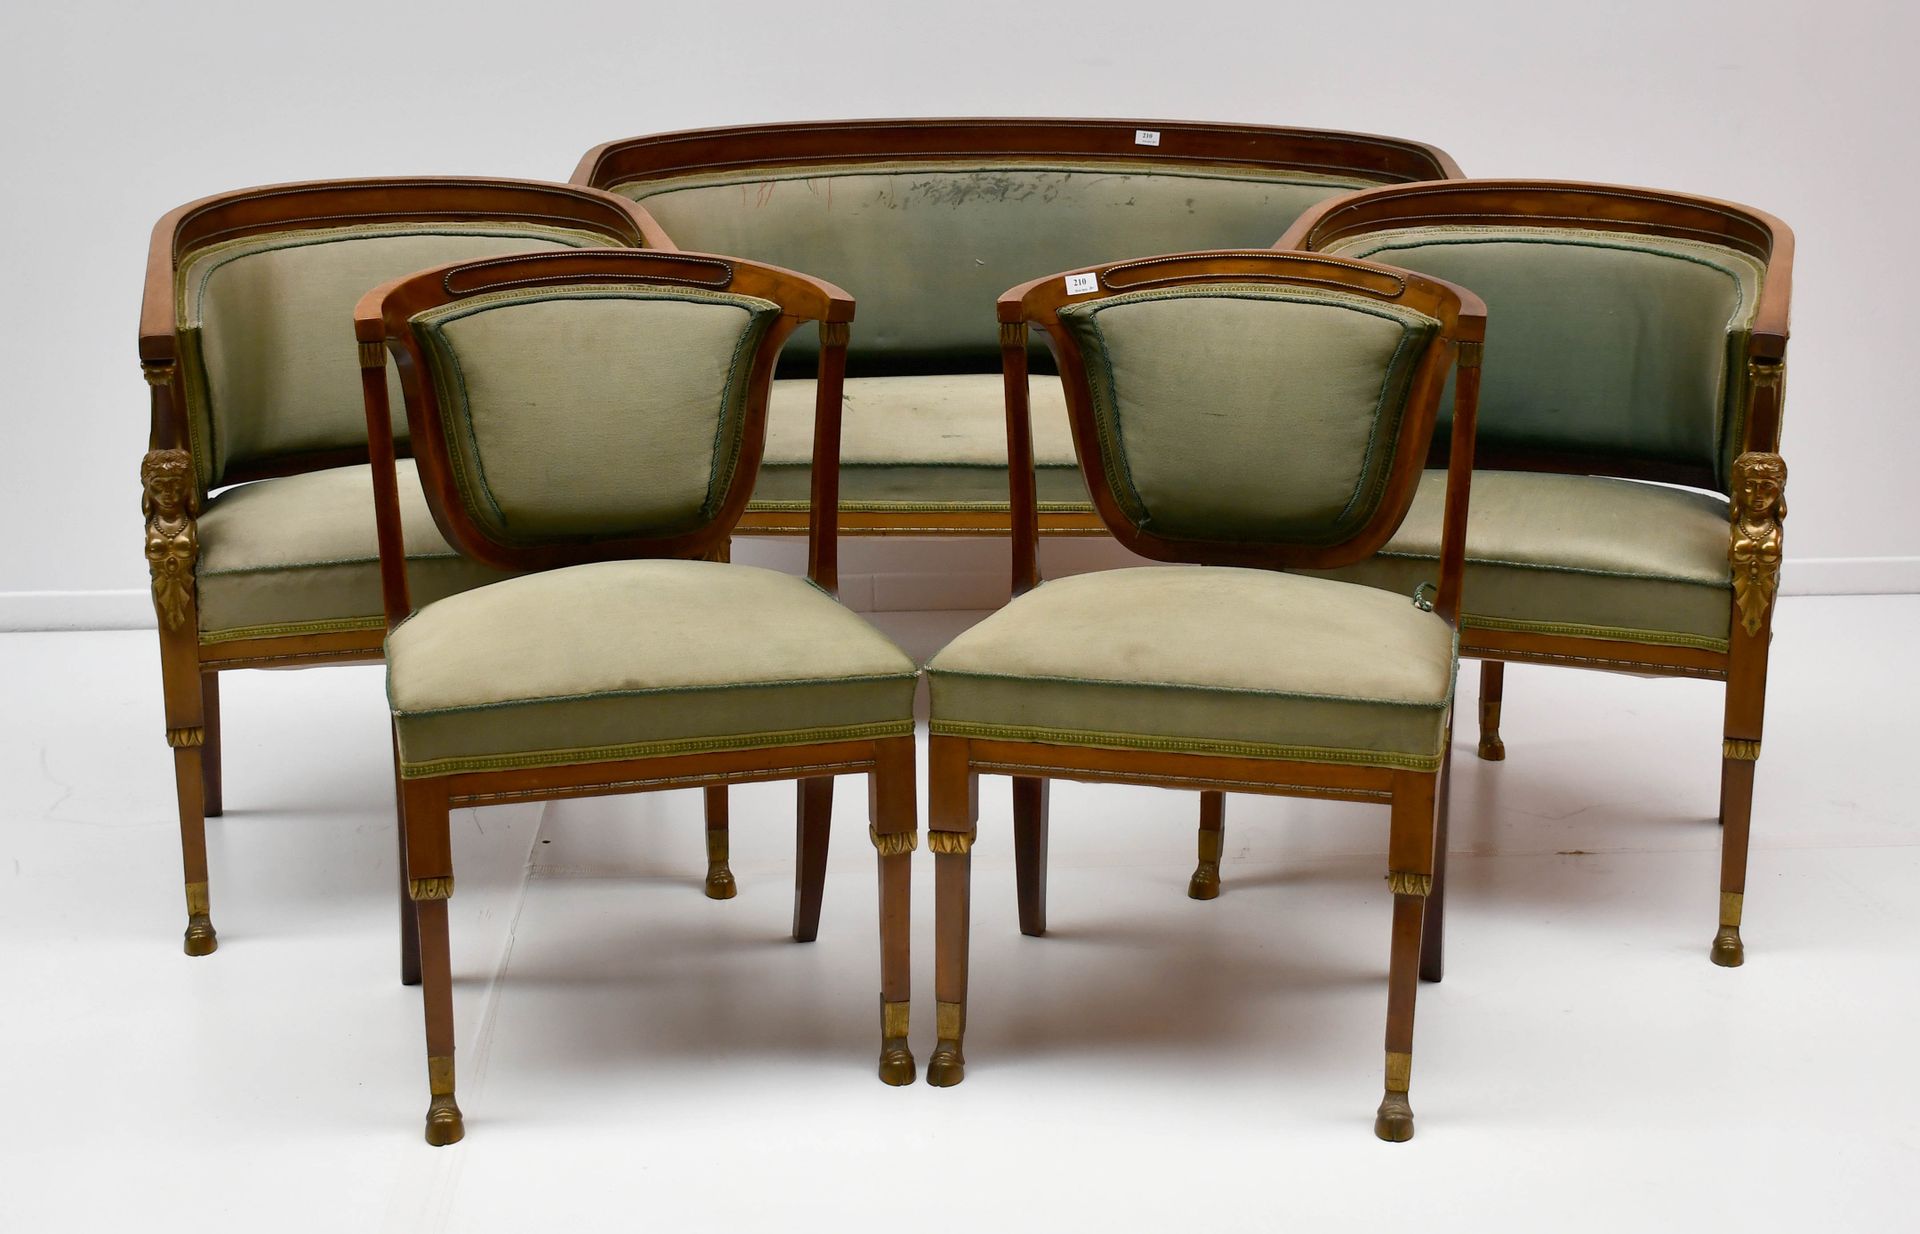 Null 胡桃木和鎏金青铜 "Retour d'Egypte "客厅套装，带狮身人面像装饰

一张篮子沙发，两张扶手椅和两把椅子。